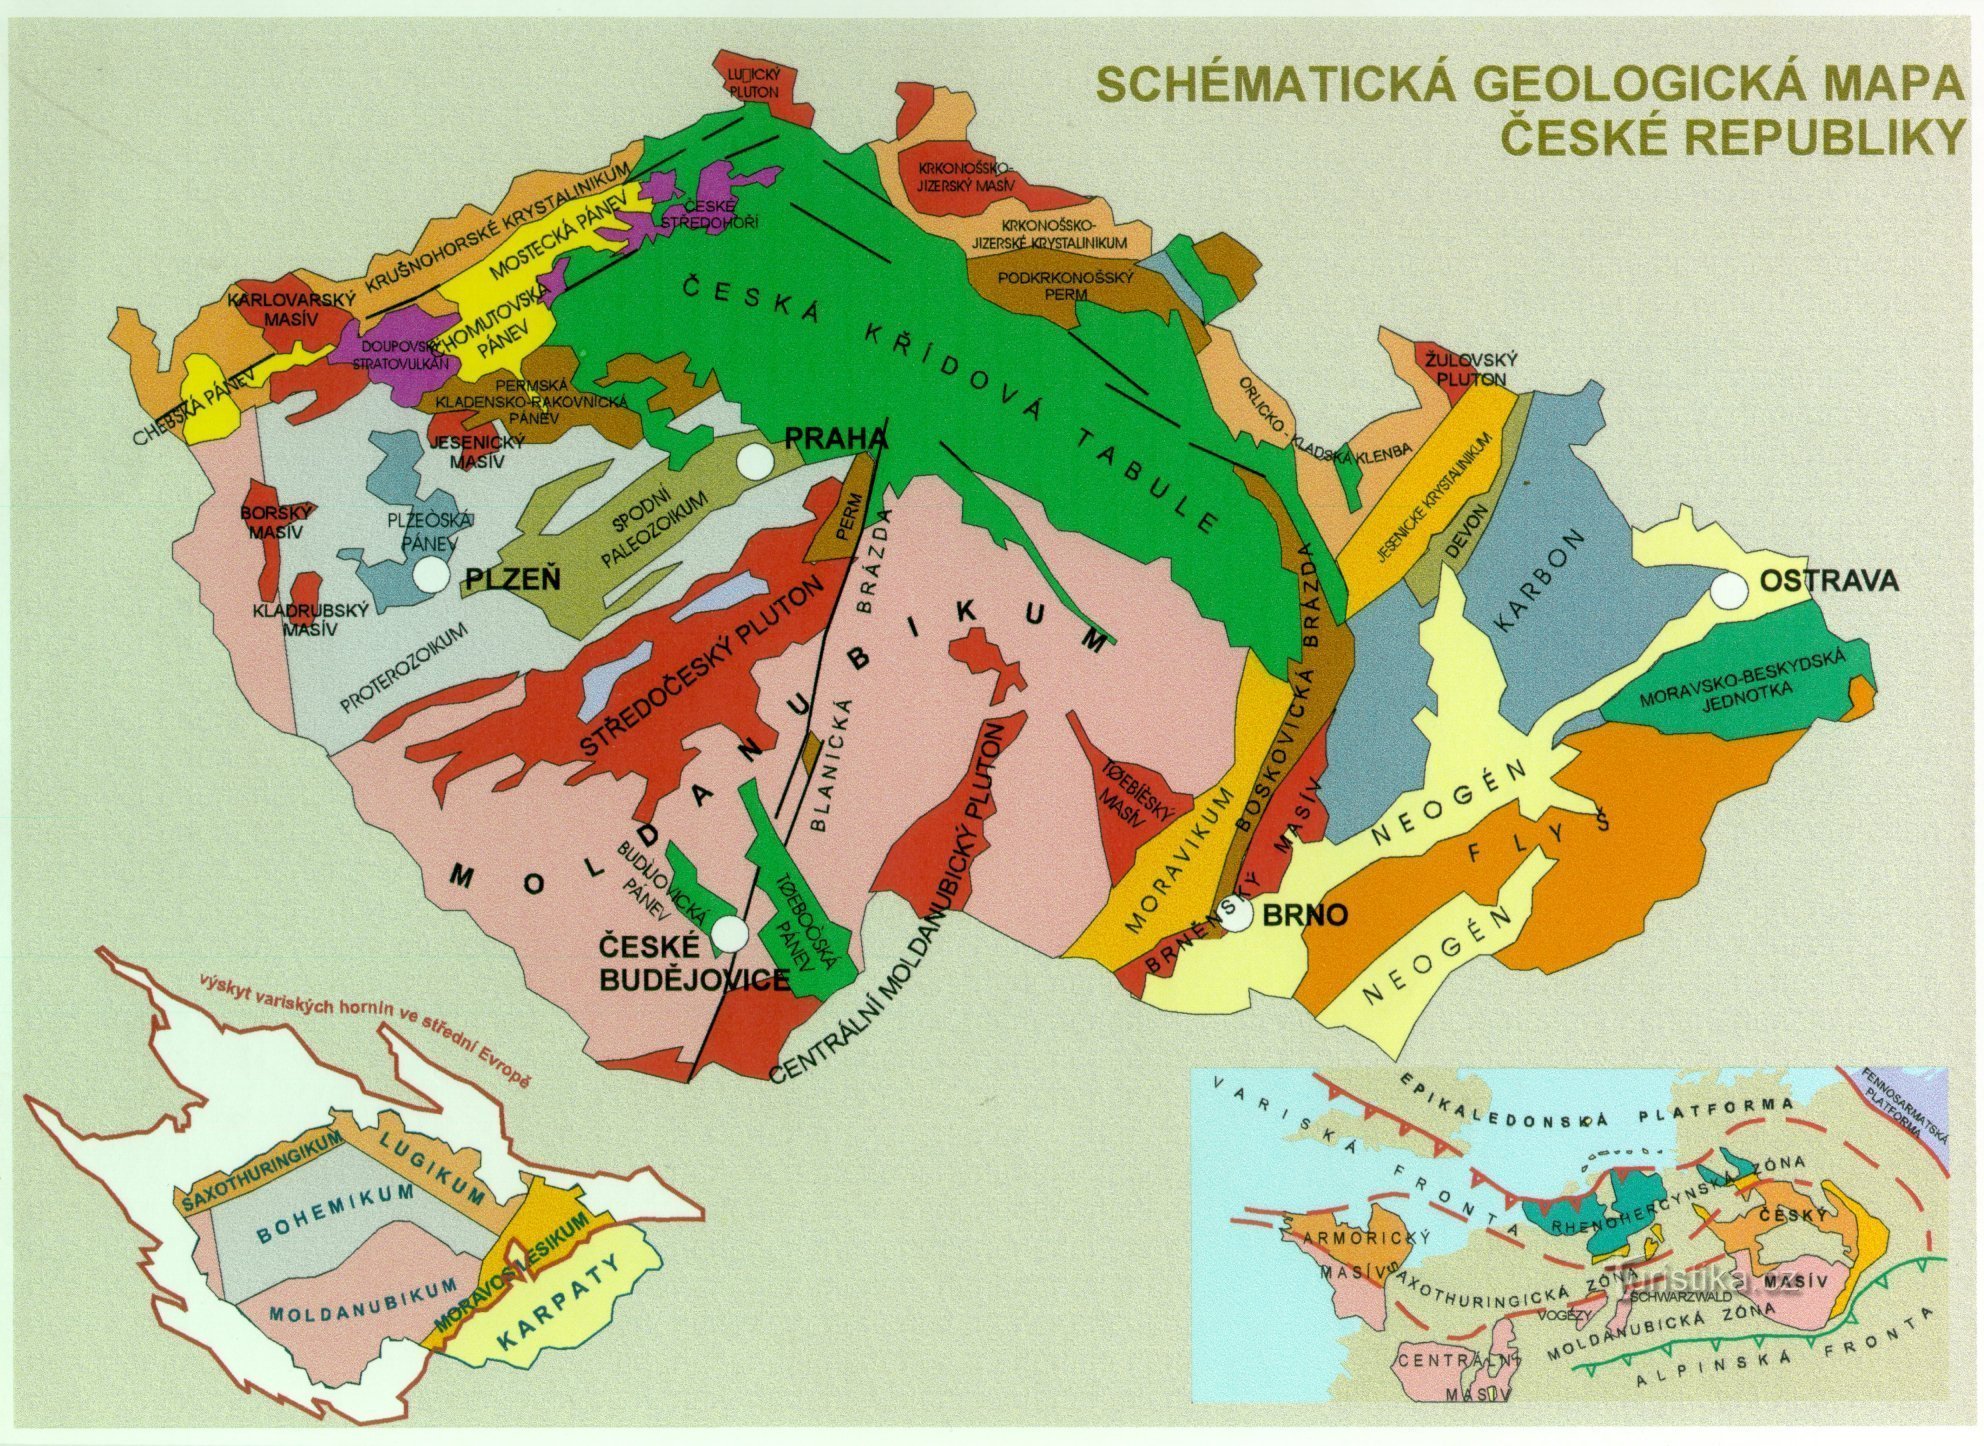 チェコ共和国の地質図 - テキストの補足画像 (https://www.ig.